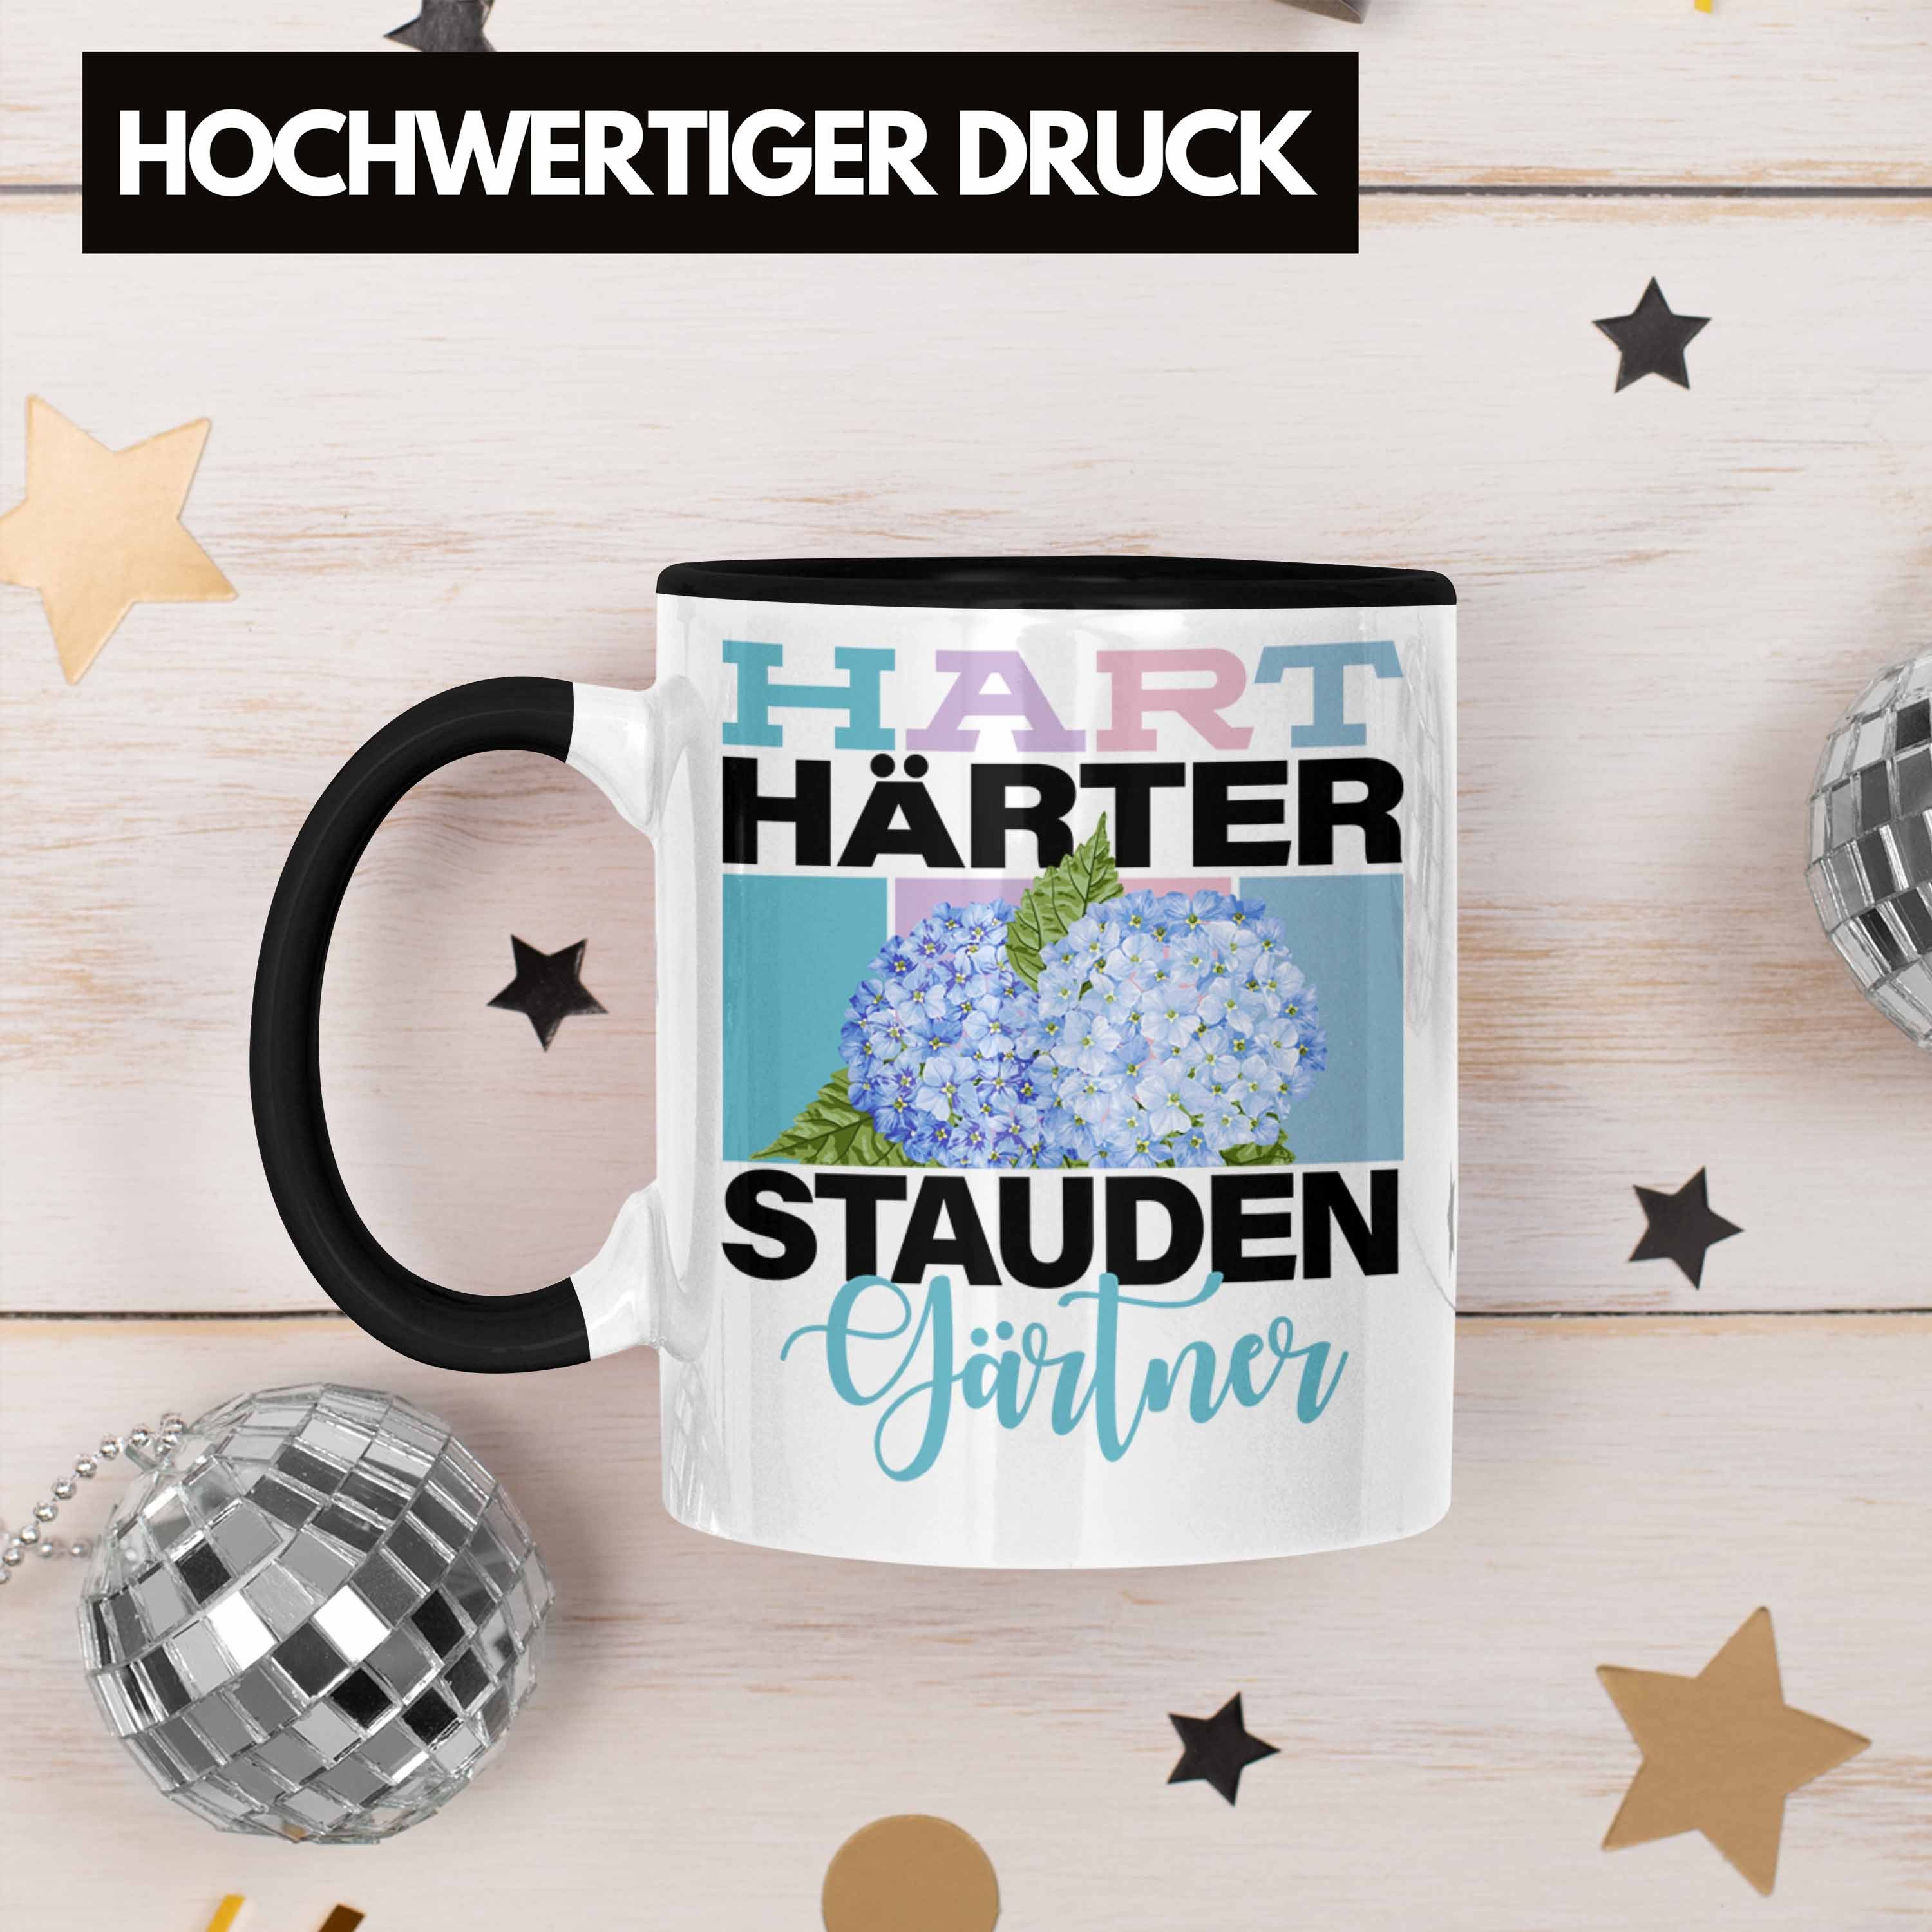 Trendation Tasse Geschenk für Staudengärtner Schwarz Staudeng Tasse "Hart Spruch Lustige Härter